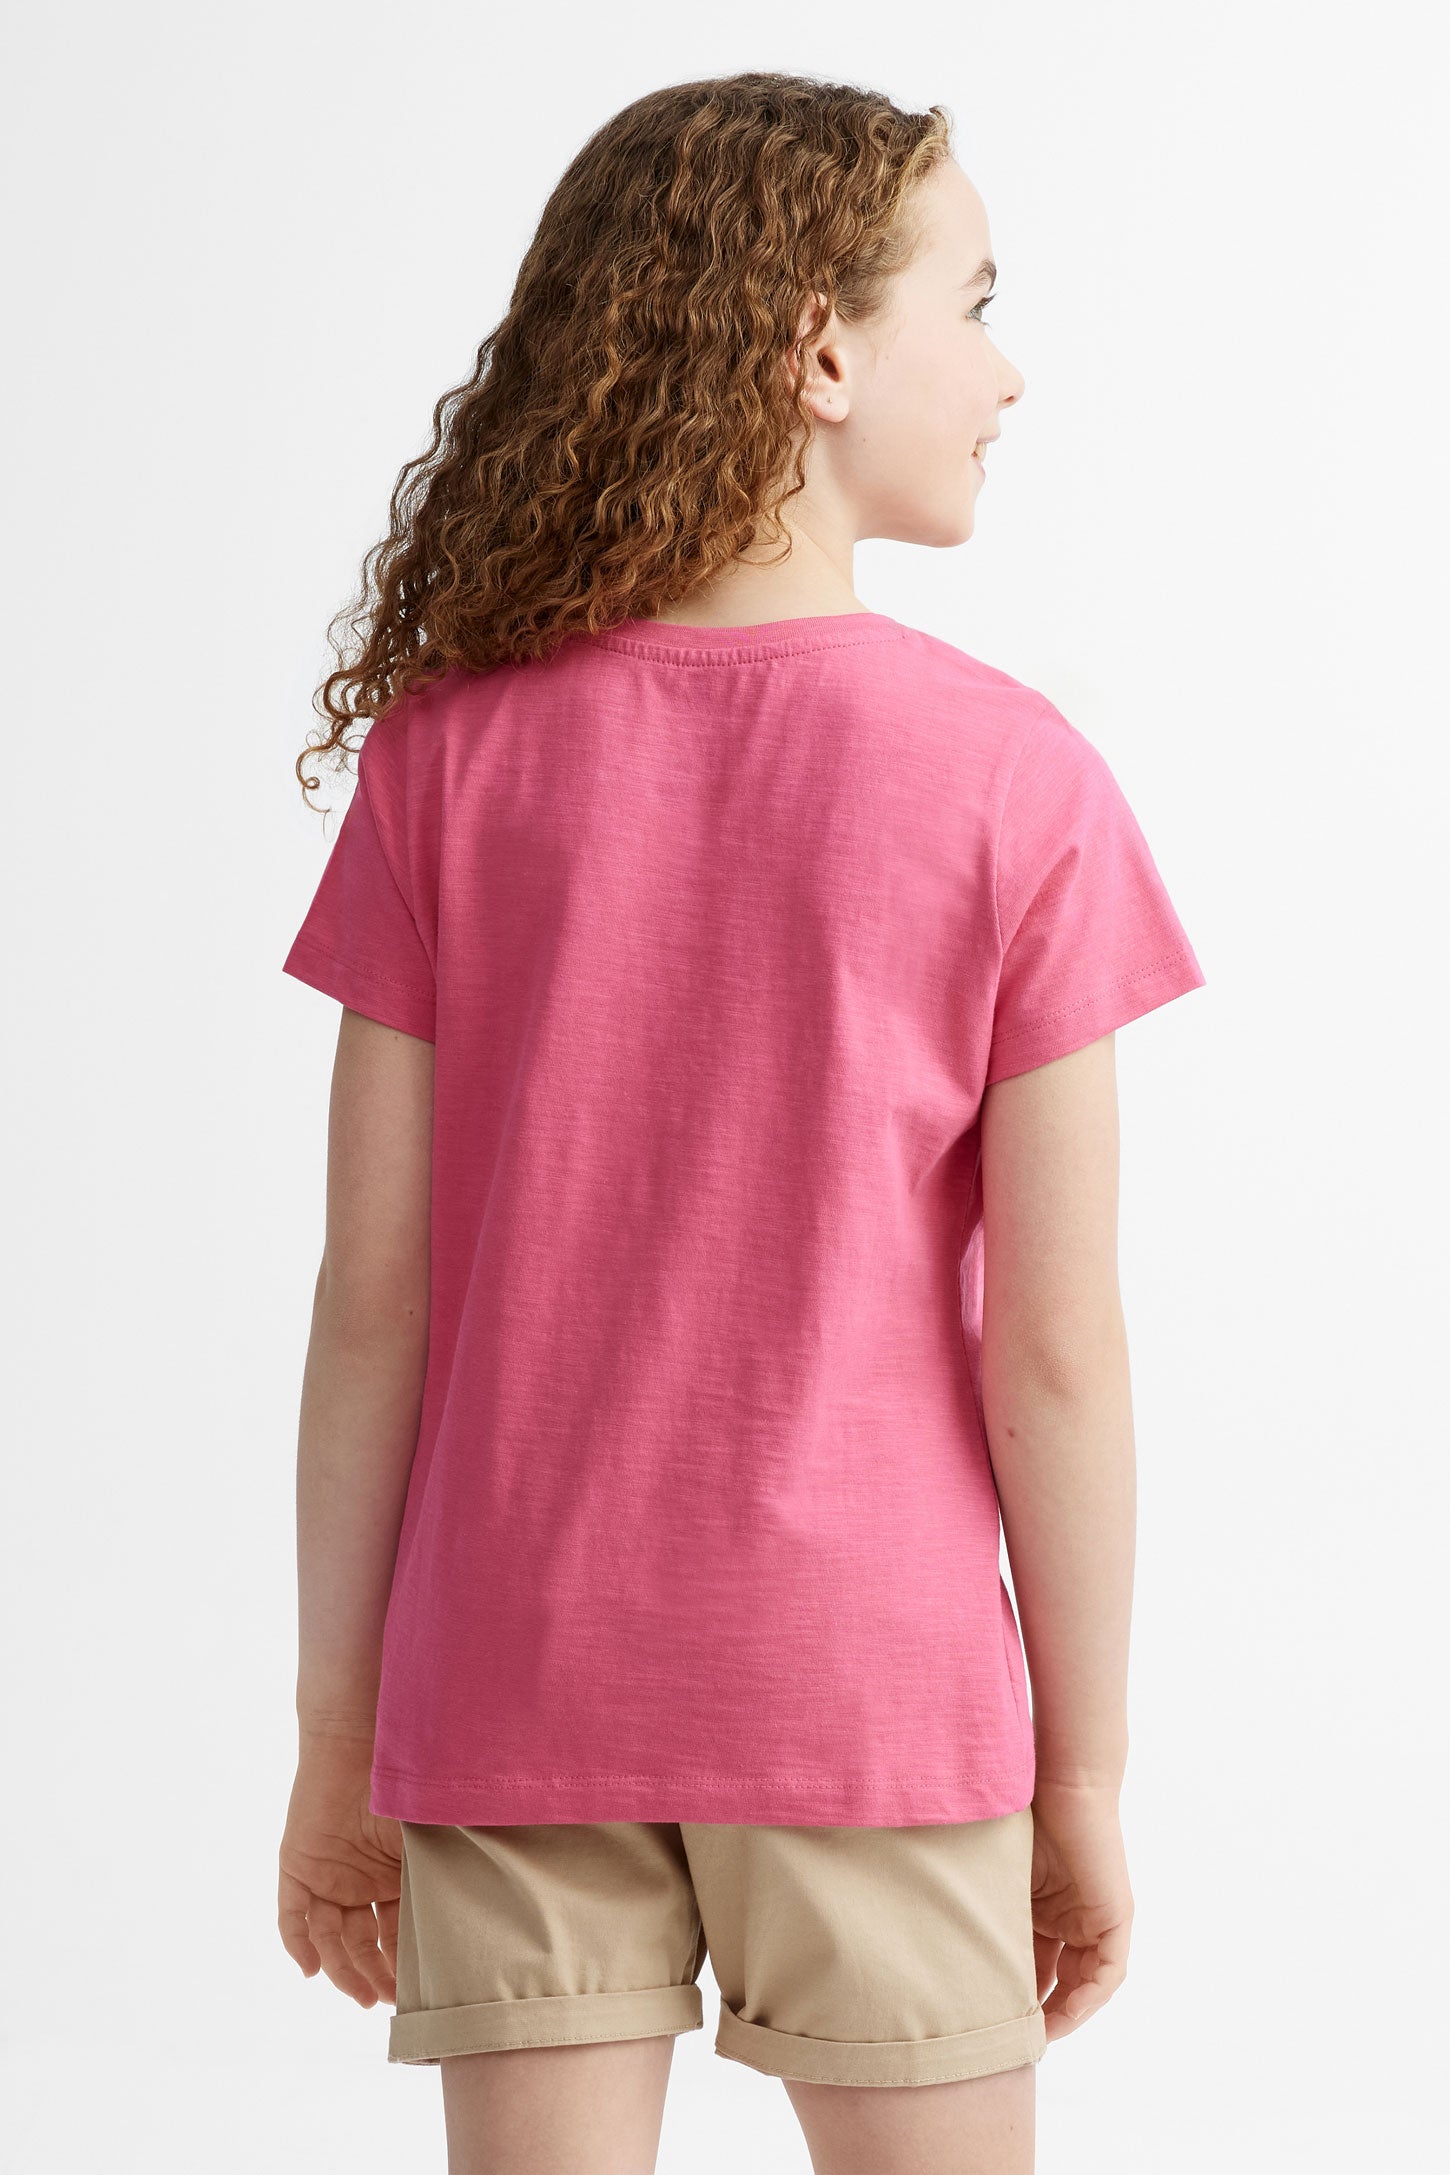 T-shirt col rond en coton, 2/25$ - Ado fille && ROSE FONCE